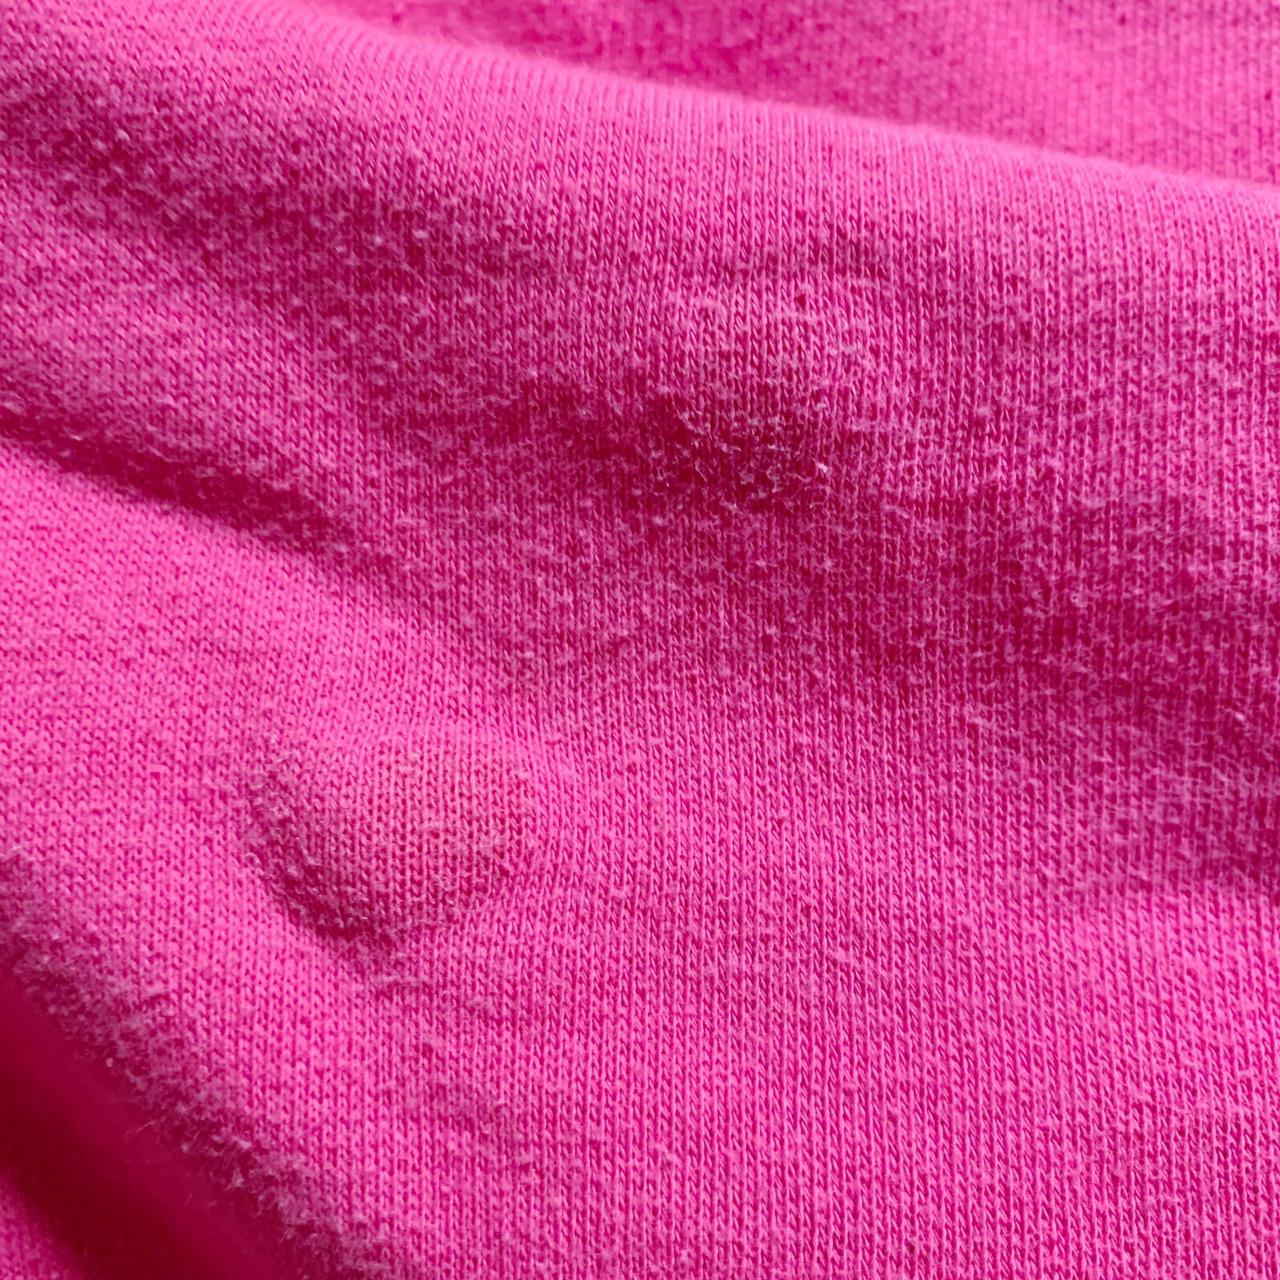 Authentic Stüssy cartoon monogram hoodie in pink - - Depop